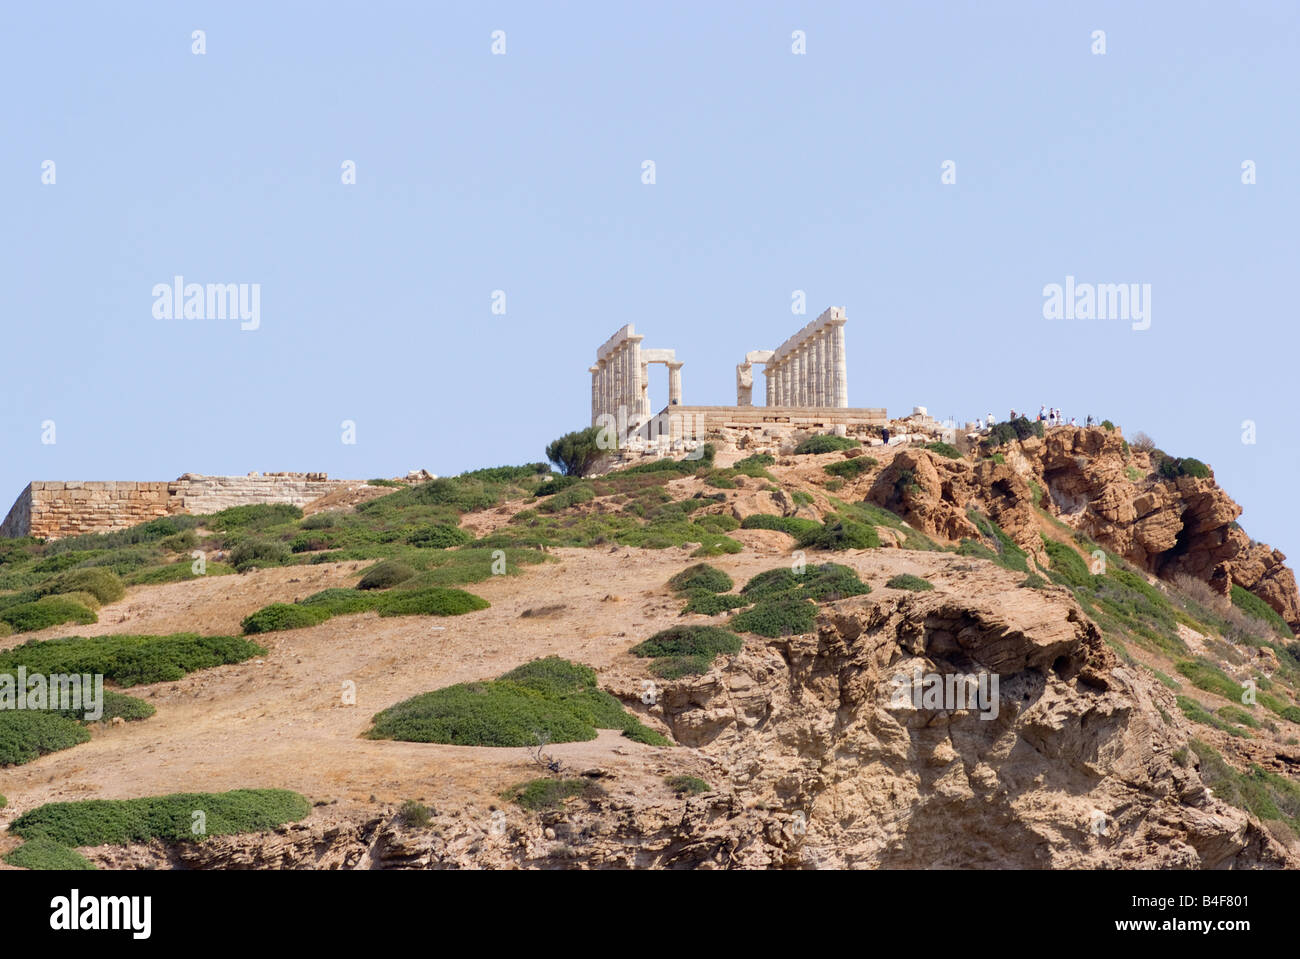 Der Poseidontempel am Kap Sounion Saronischen Golf griechischen Festland Ägäis Griechenland Stockfoto